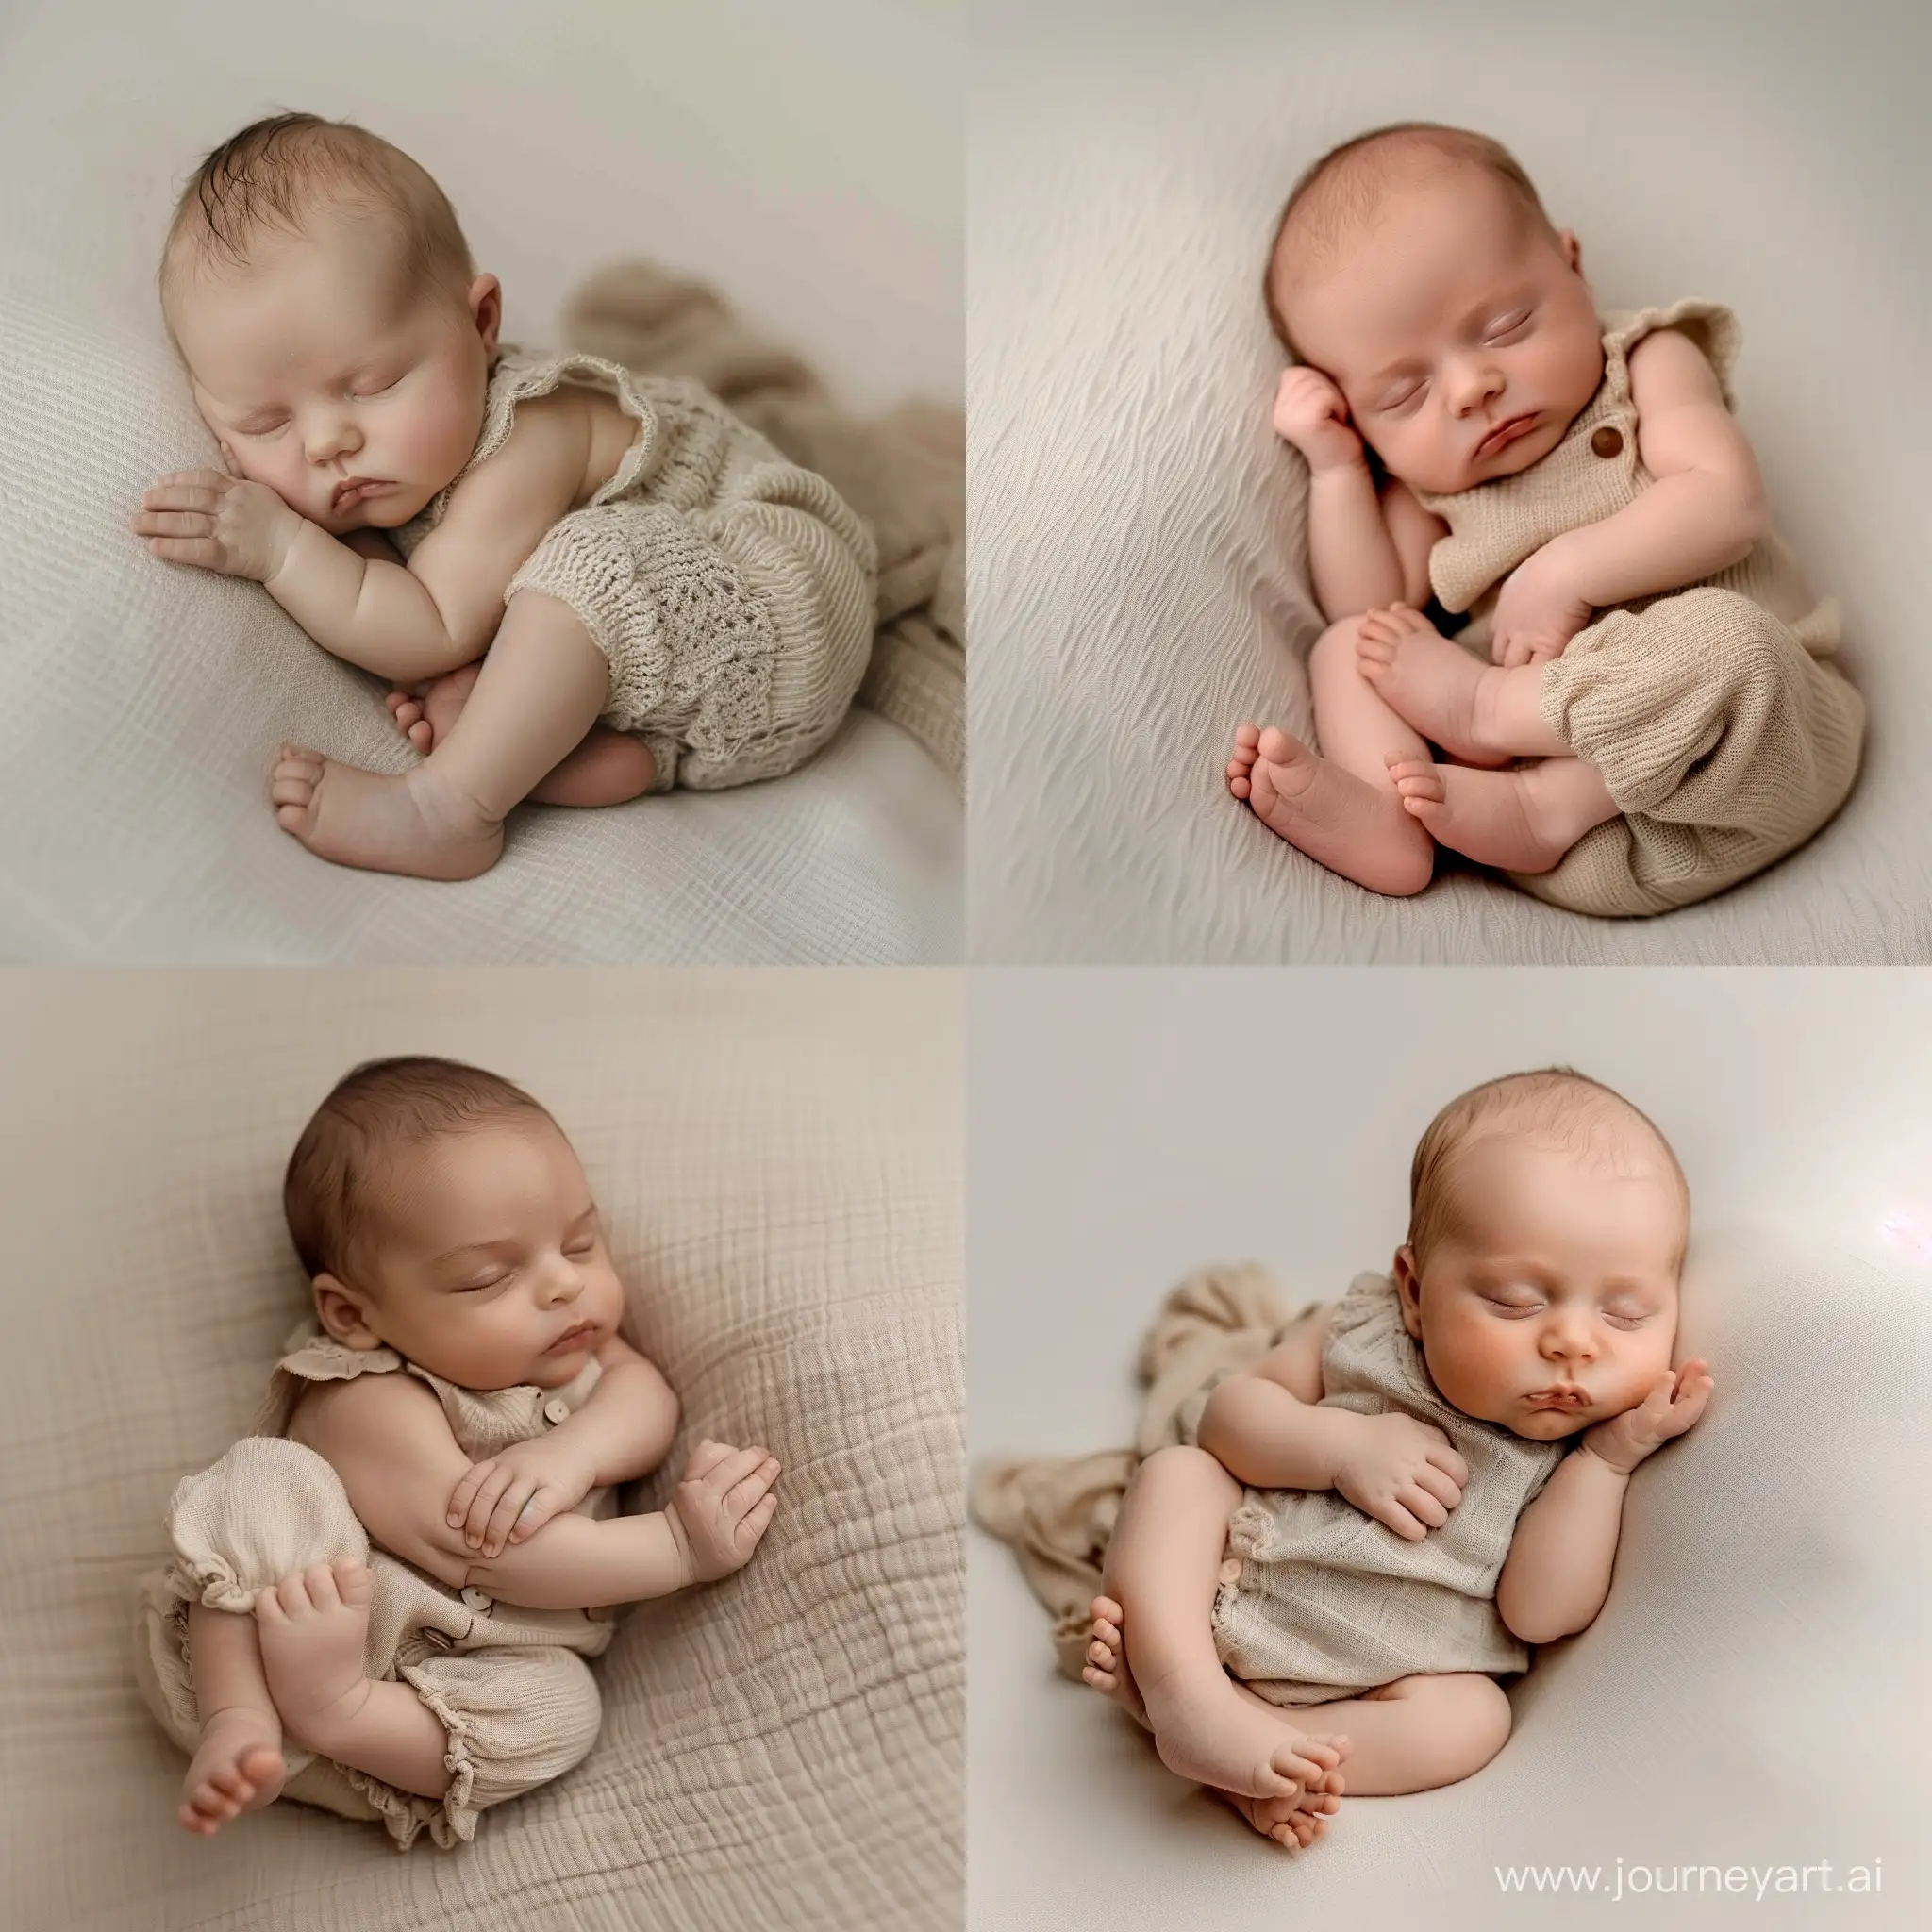 Peaceful-Newborn-Baby-Sleeping-in-Beige-Jumpsuit